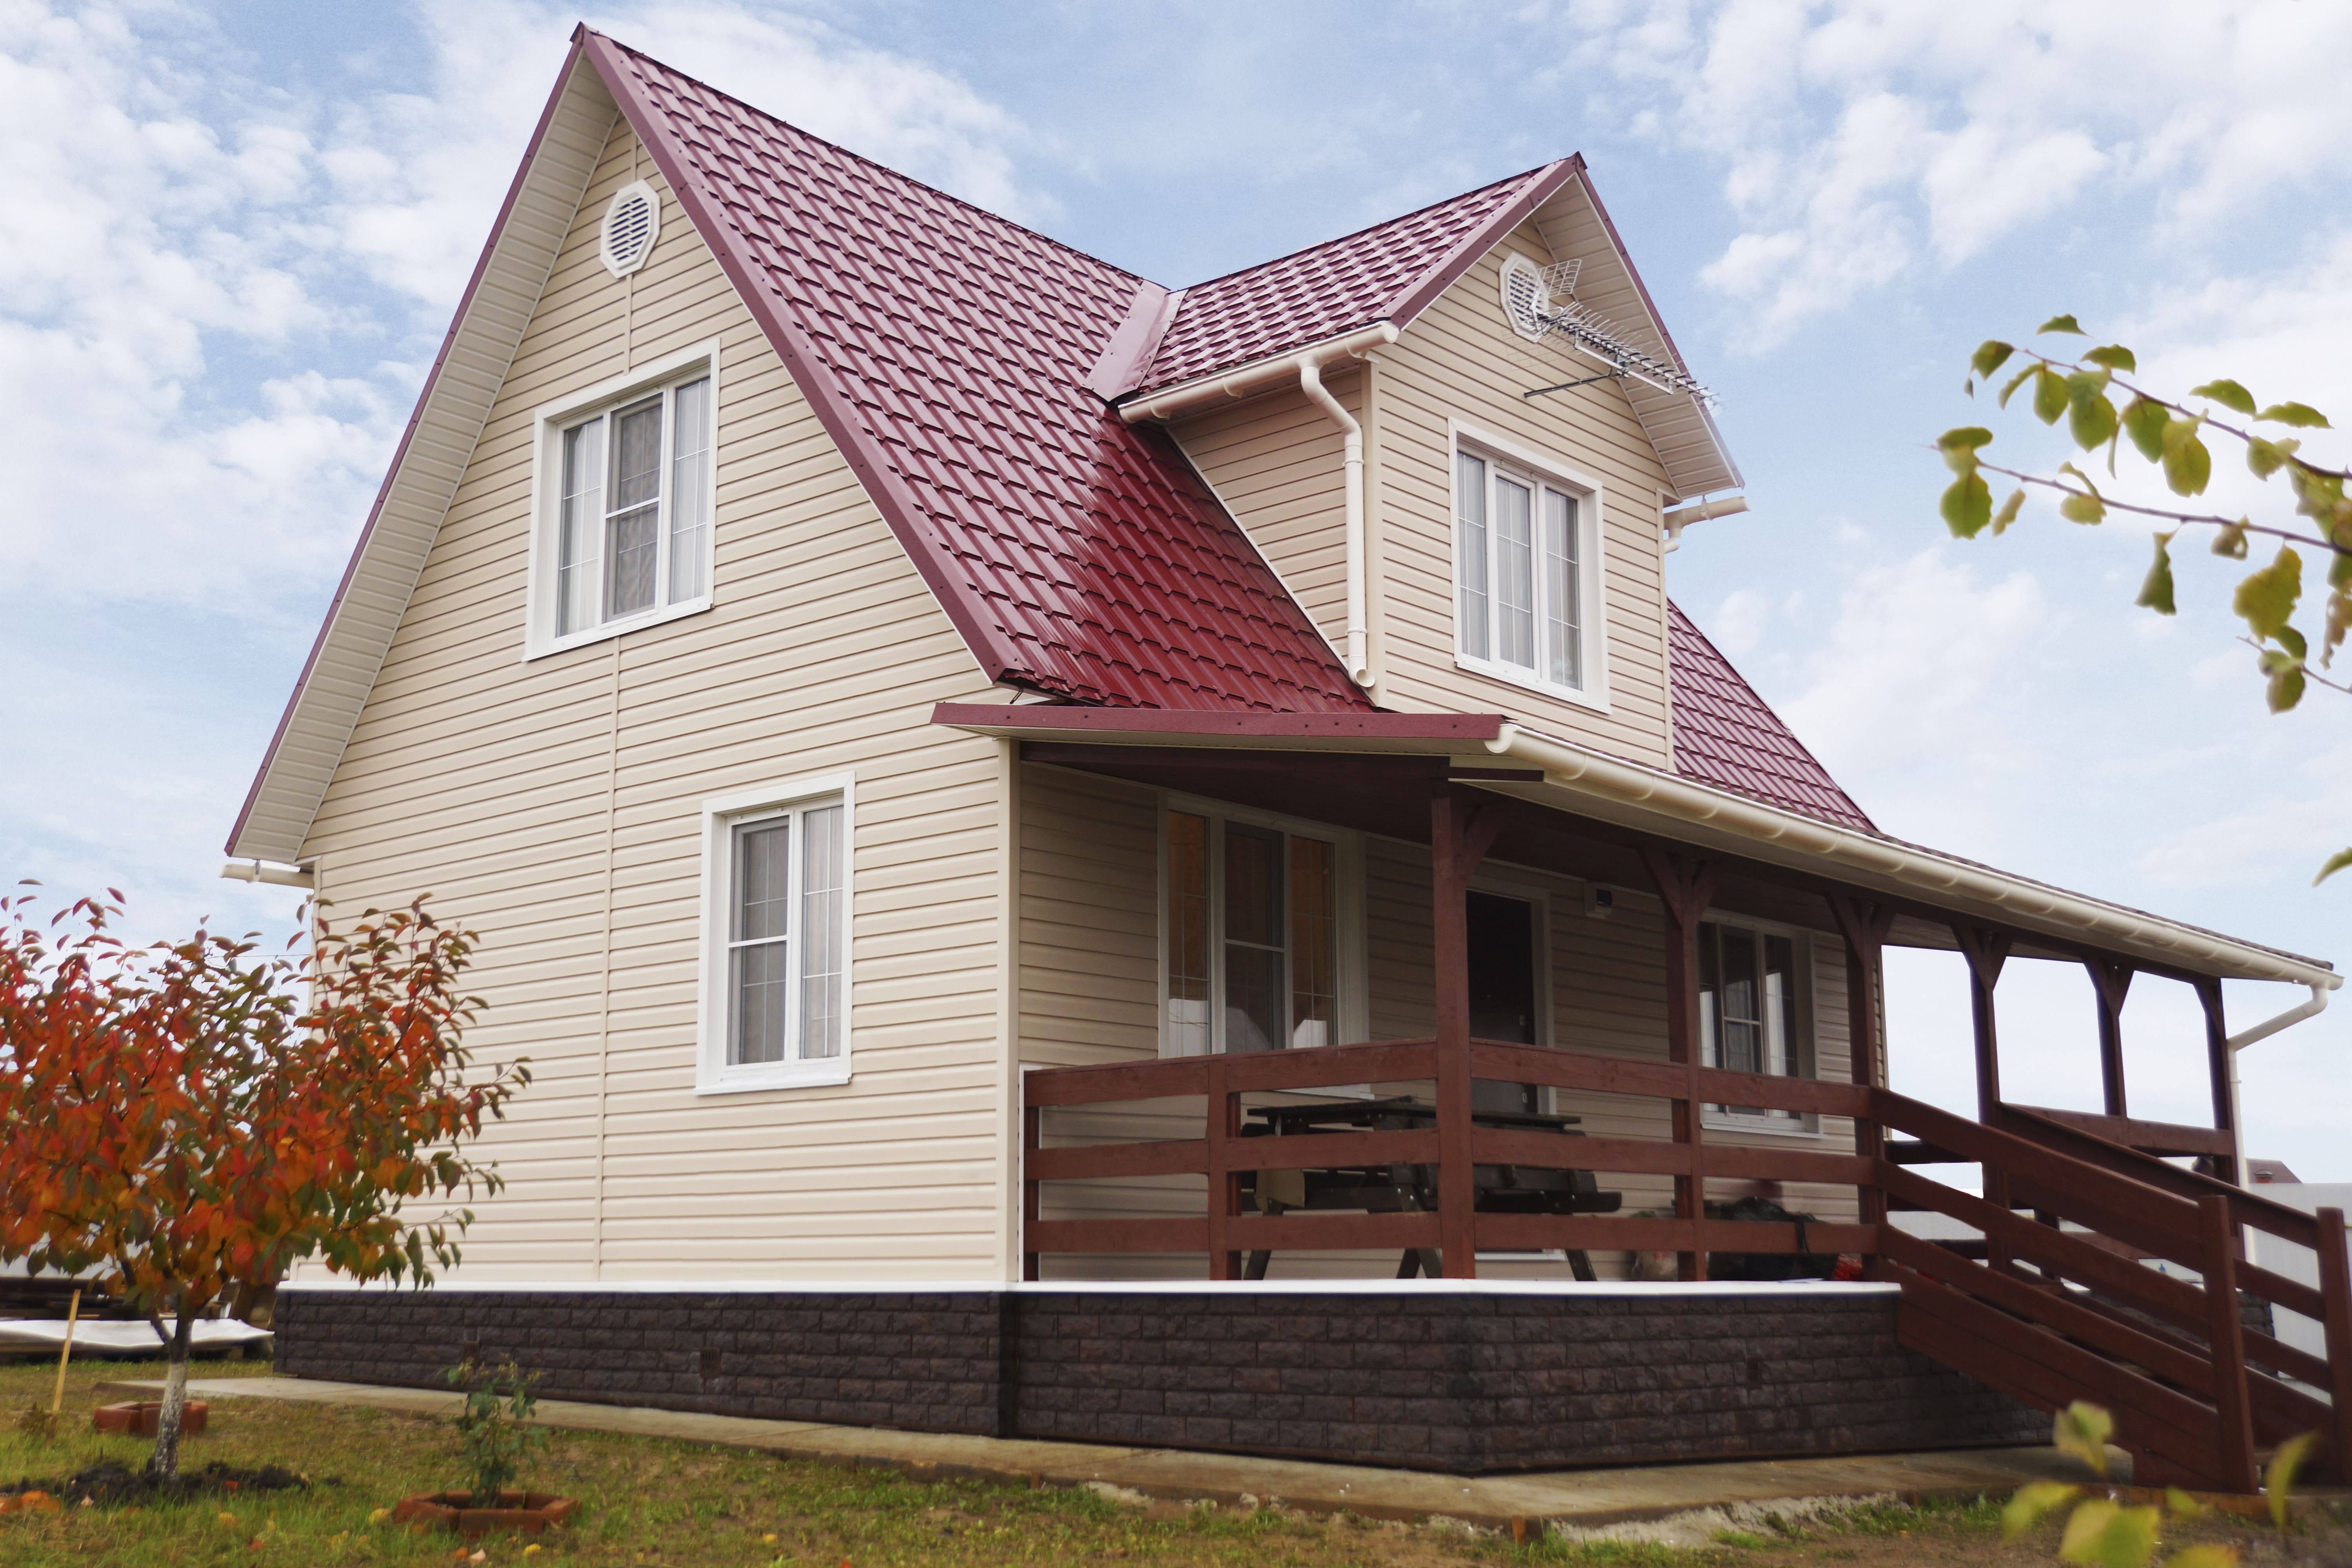 Подбор, выбор цвета сайдинга и его сочетание с крышей дома (+ видео и фото домов)